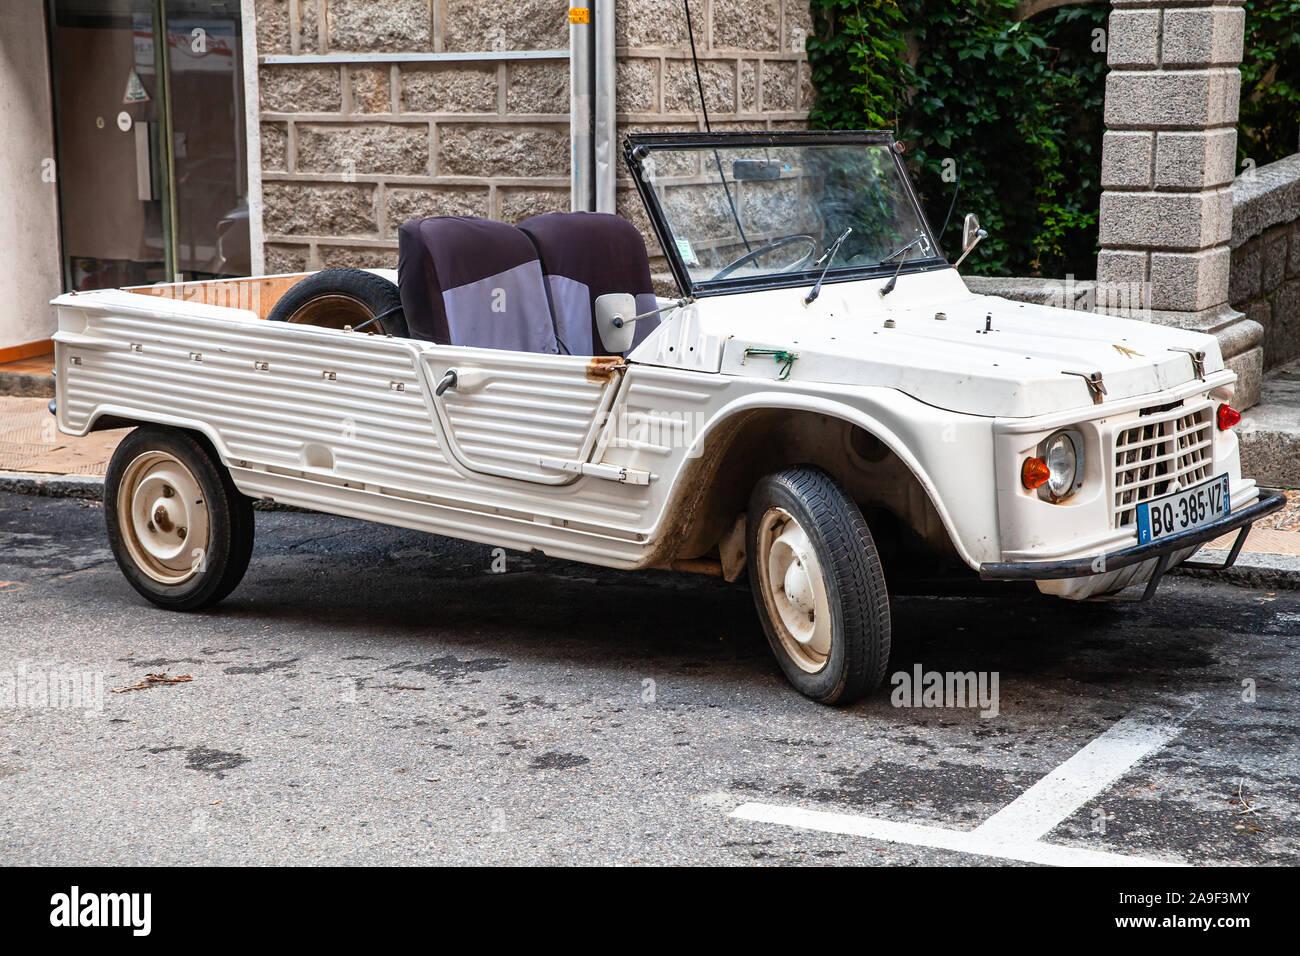 Sartène, Francia - 19 agosto 2018: Vintage White Citroen Mehari auto sta parcheggiato su una strada in Francia Foto Stock